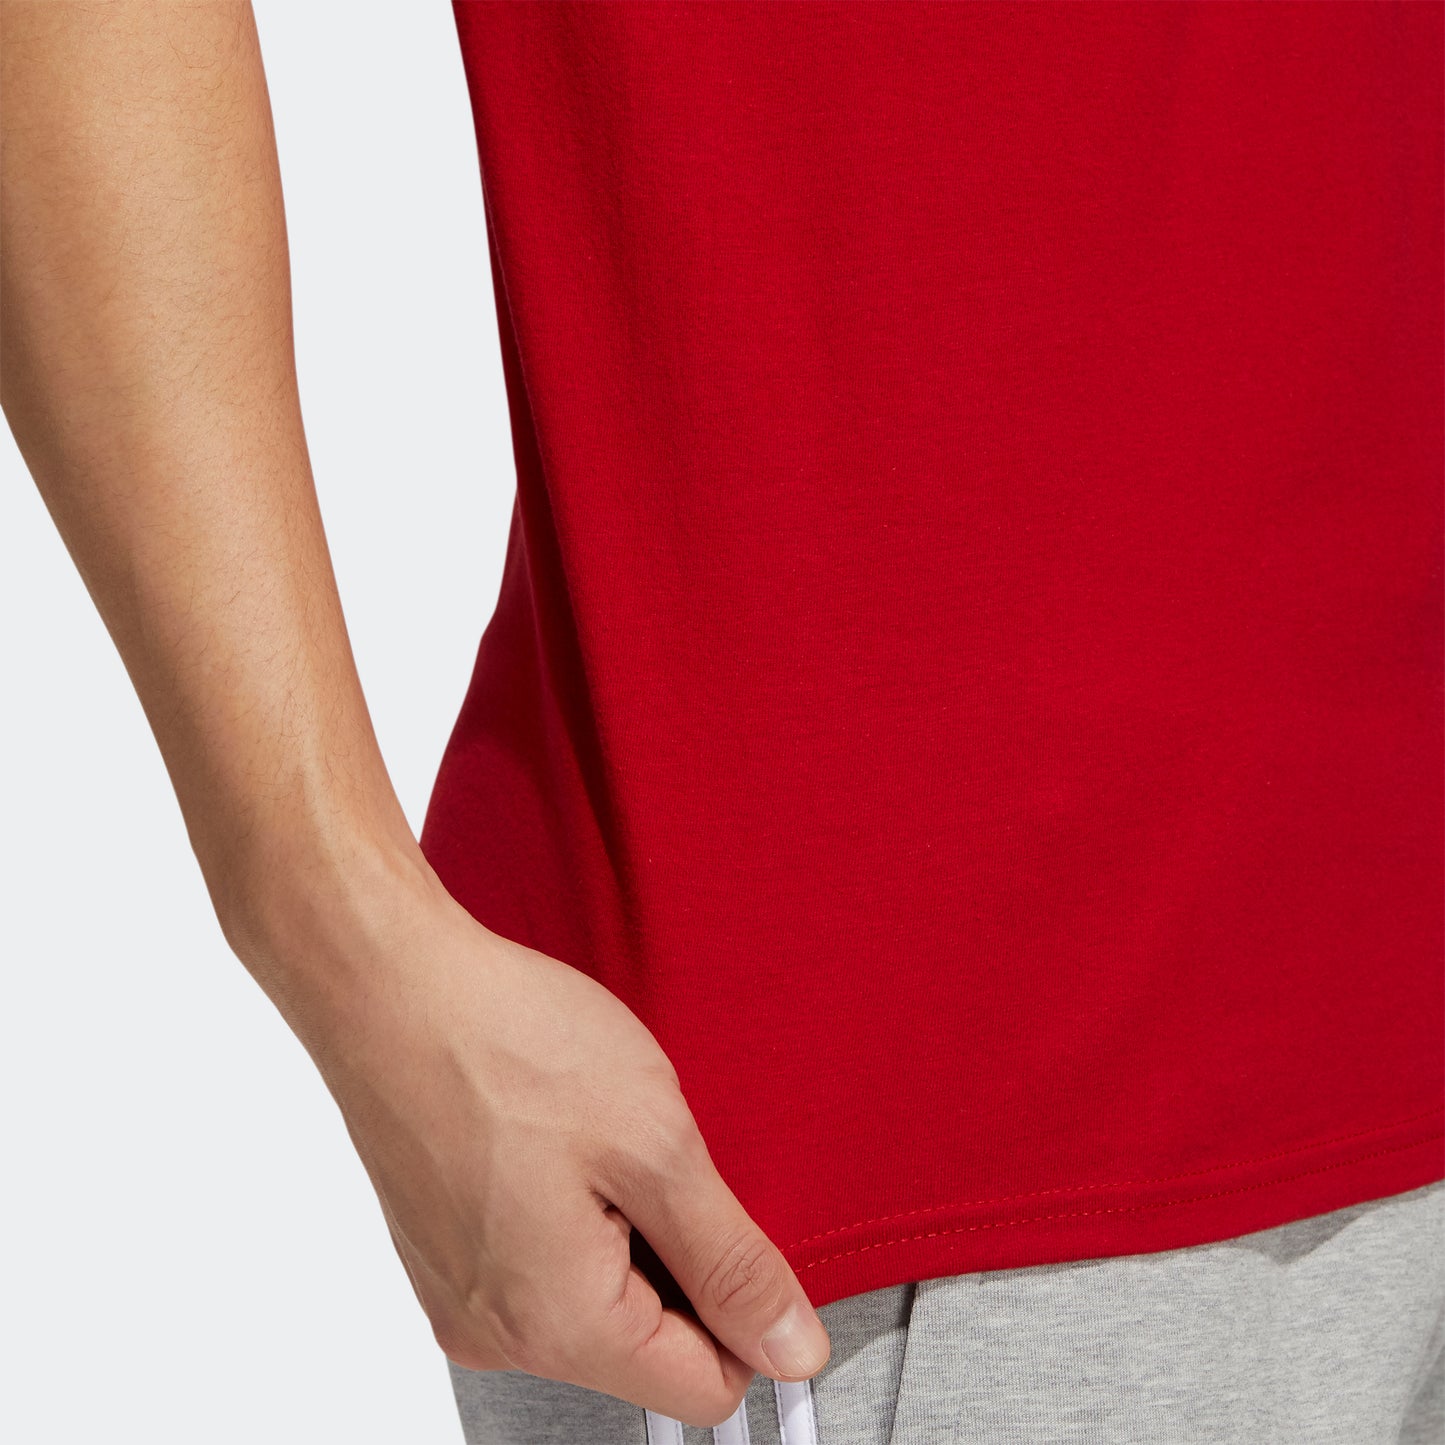 adidas AMPLIFIER T-Shirt | Power Red | Men's